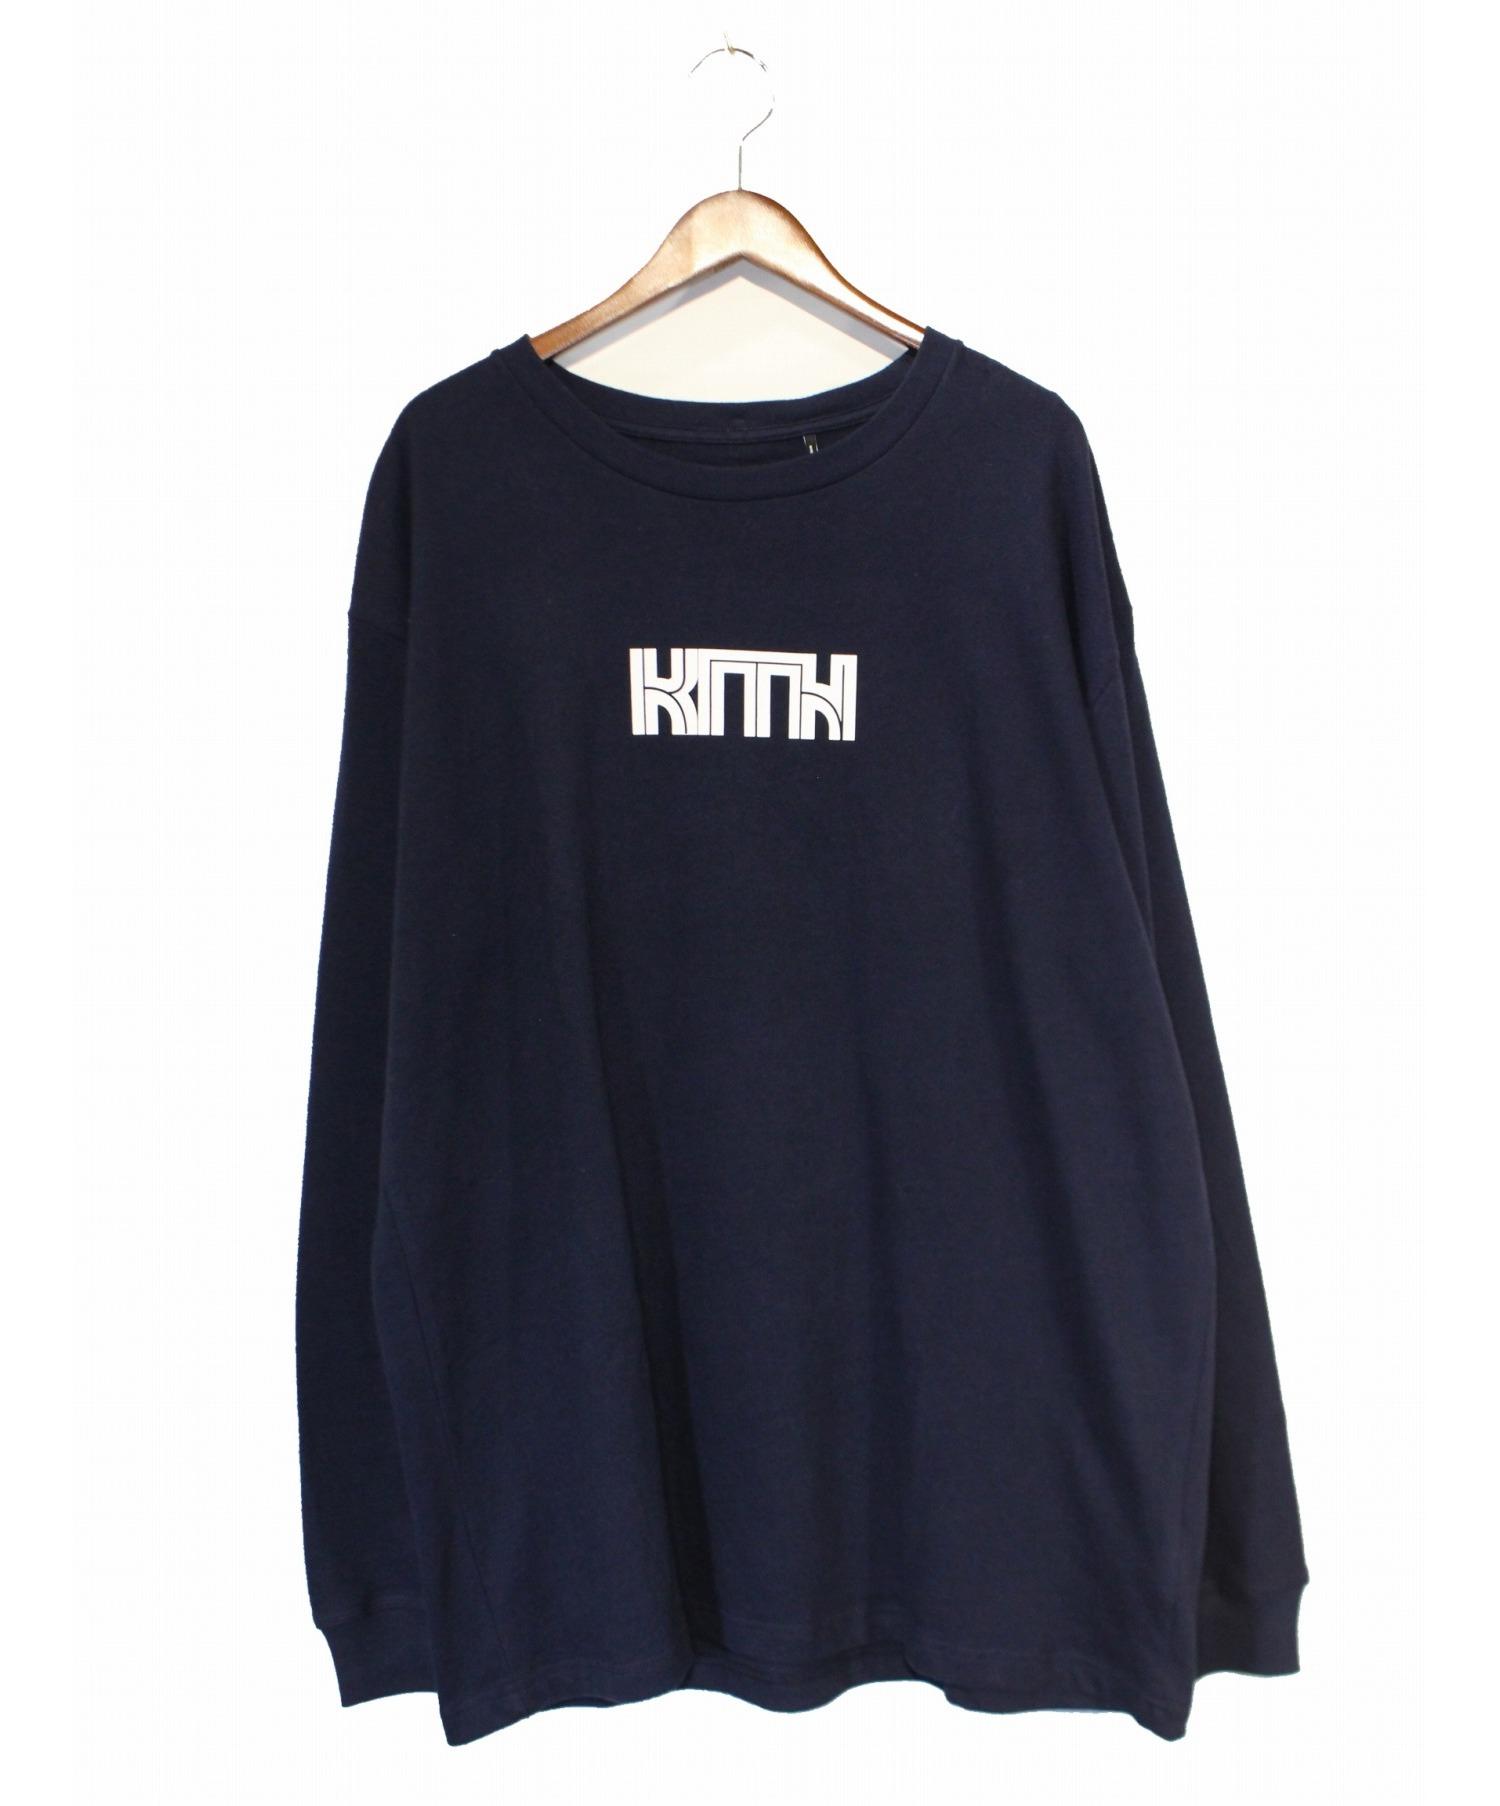 ネットワーク全体の最低価格に挑戦 KITH ロング ティシャツ long tshirt Sサイズ www.plantan.co.jp